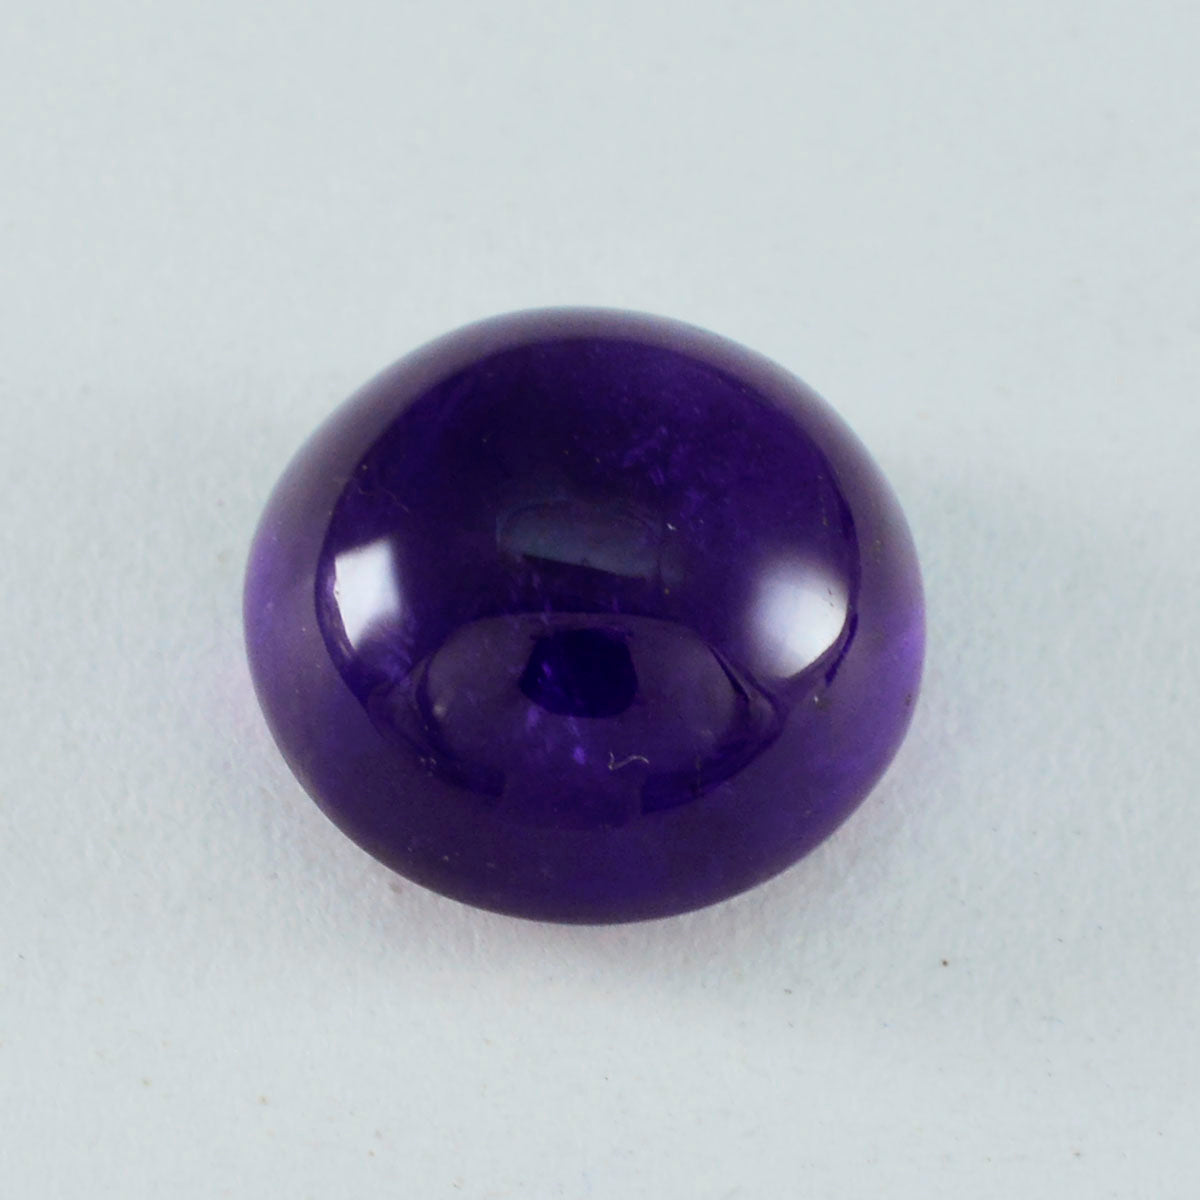 riyogems 1pc cabochon d'améthyste violette 13x13 mm forme ronde a+1 qualité pierres précieuses en vrac